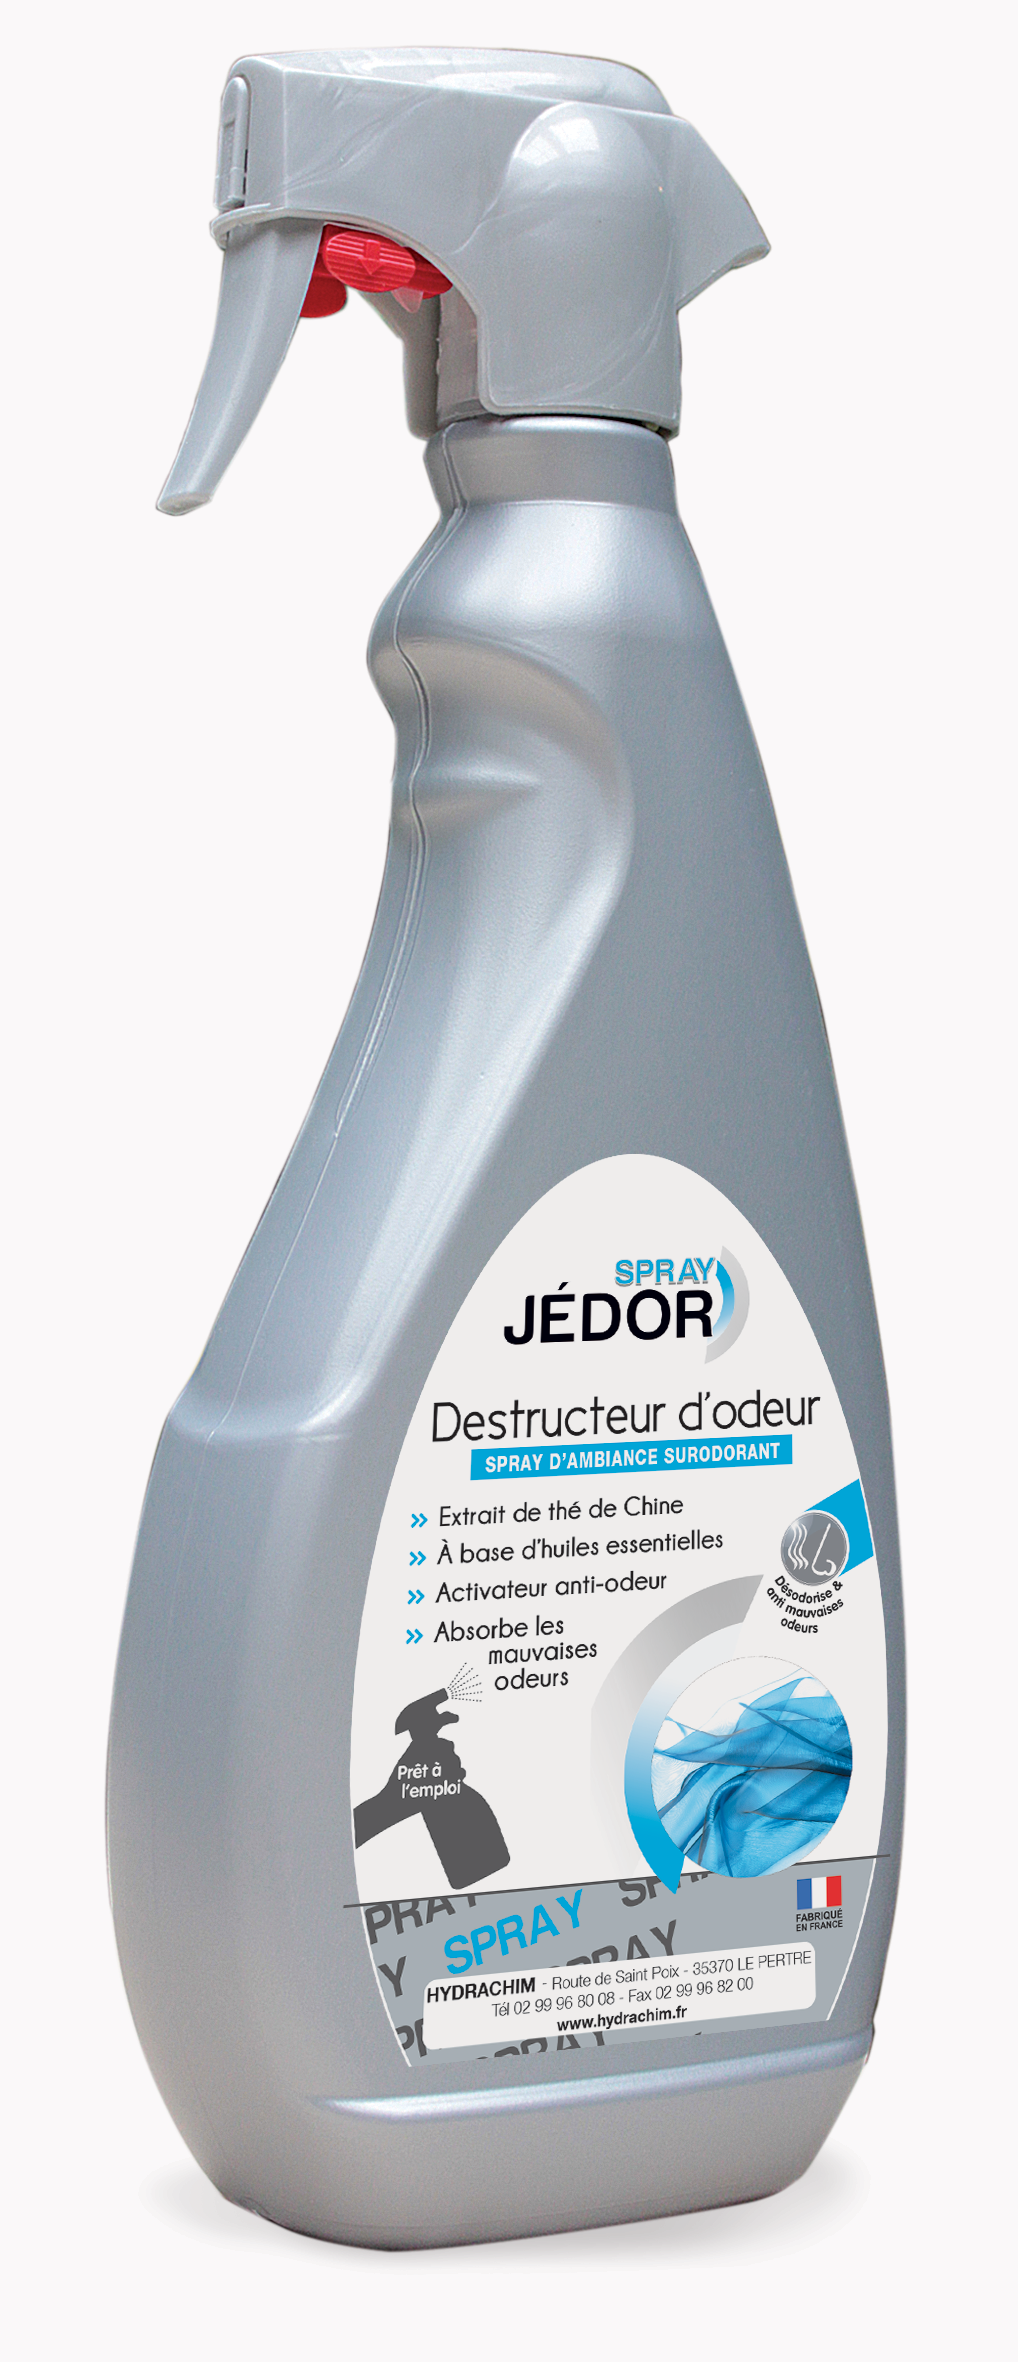 Spray surodorant remanent destructeur d'odeur_0